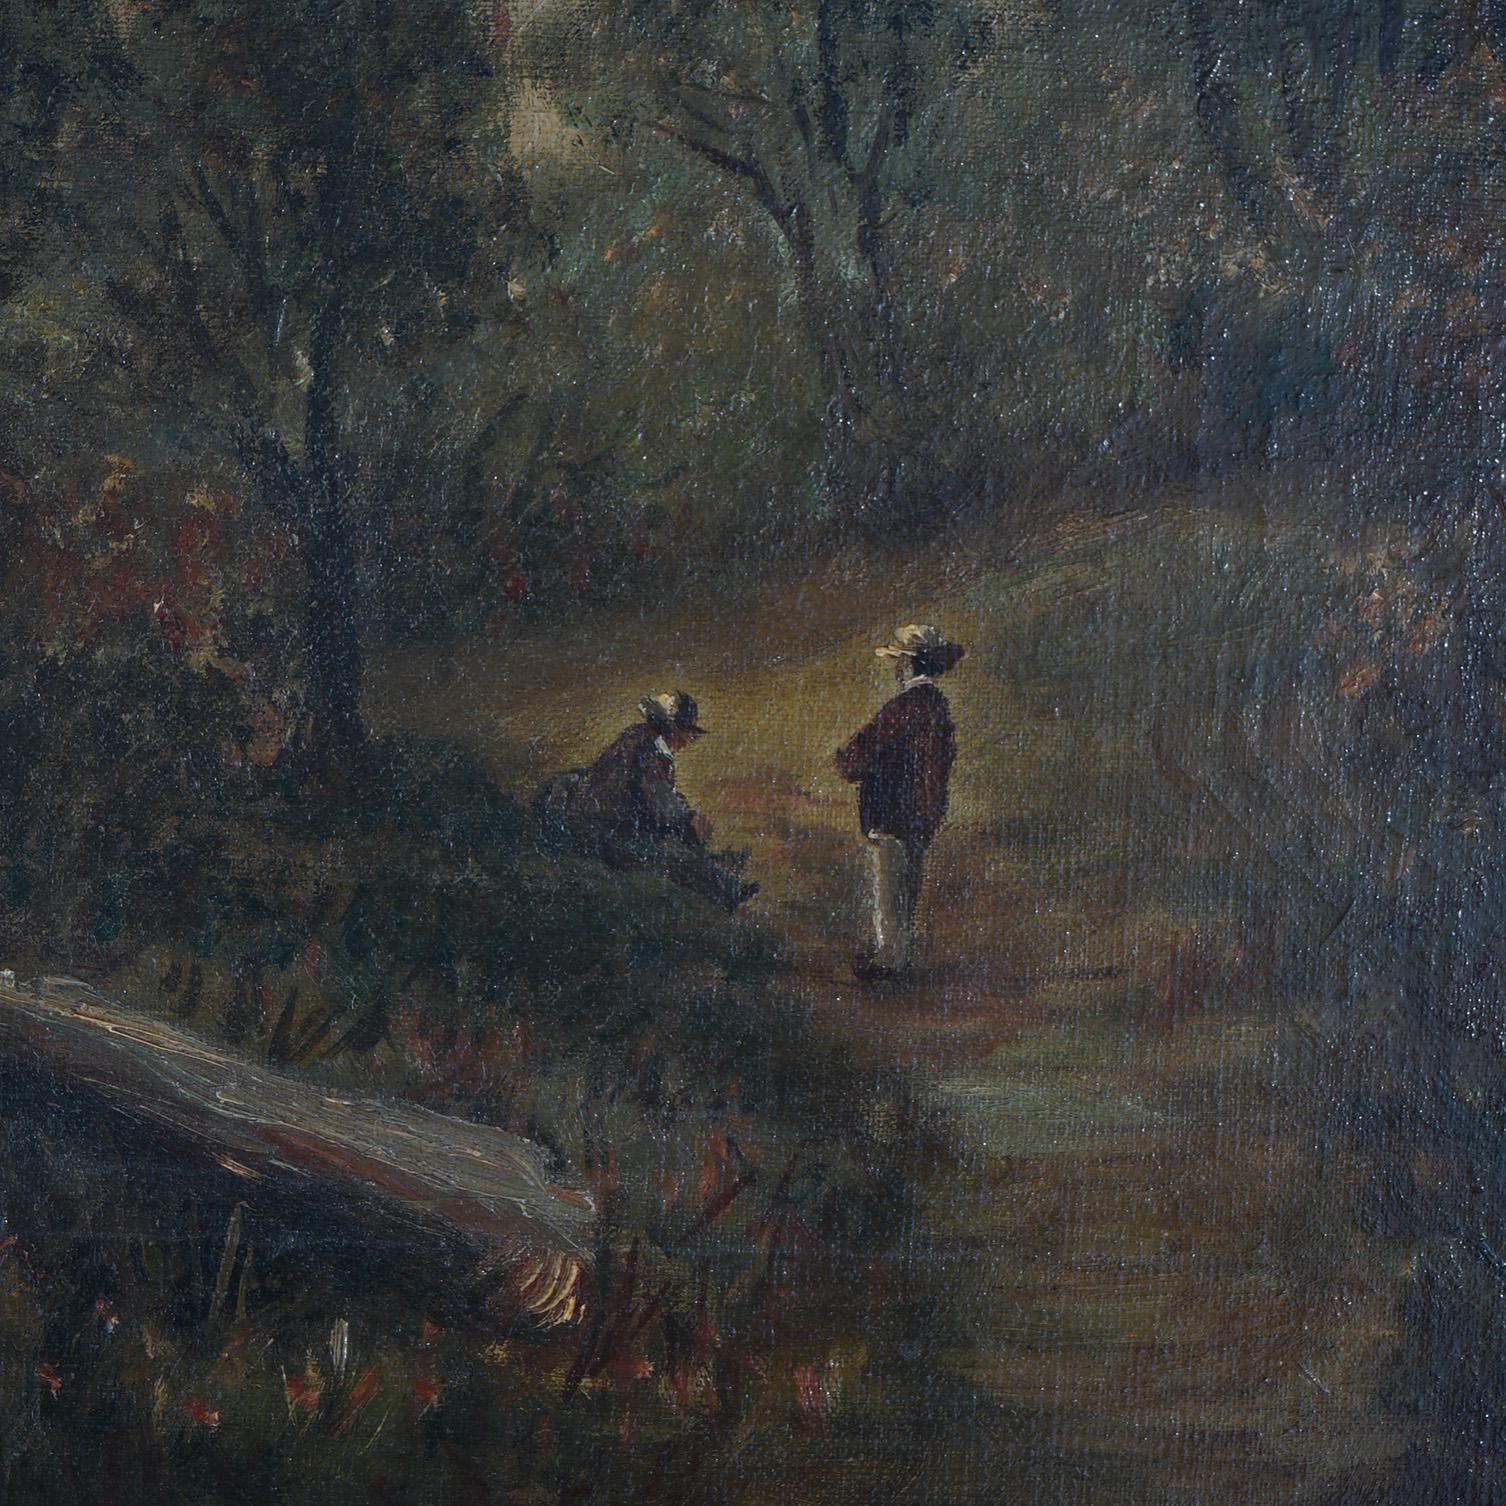 Chatten Oil on Canvas Landscape of Rural Village Scene, Framed, C1890 For Sale 1